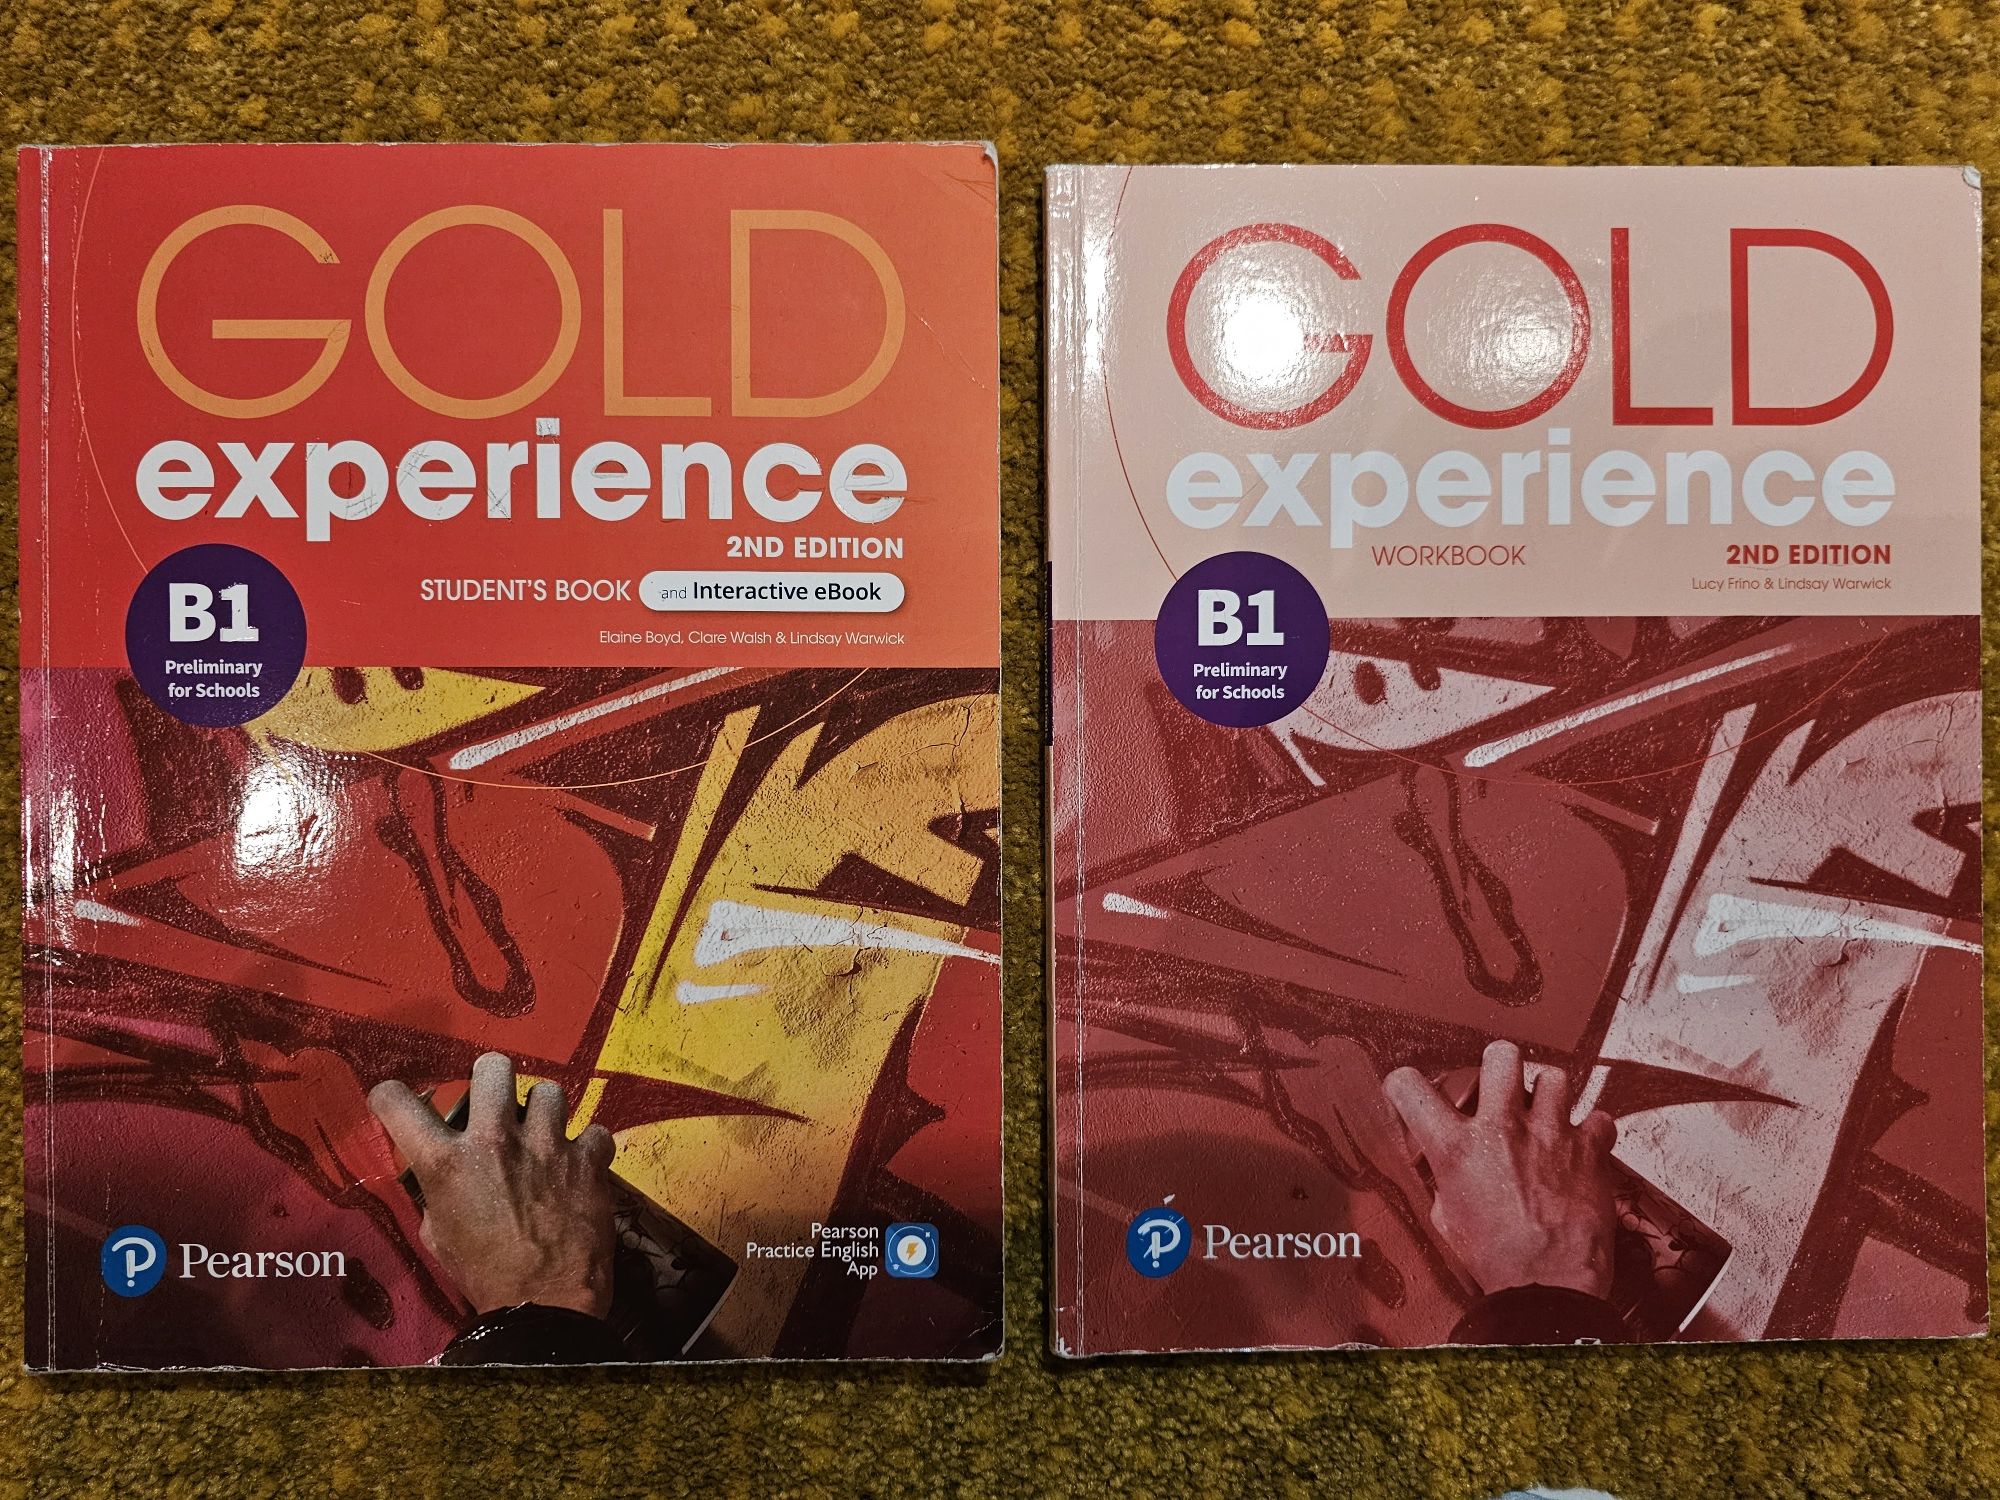 Livros Curso inglês, gold experience B1
Livro e livro de exercícios.
C